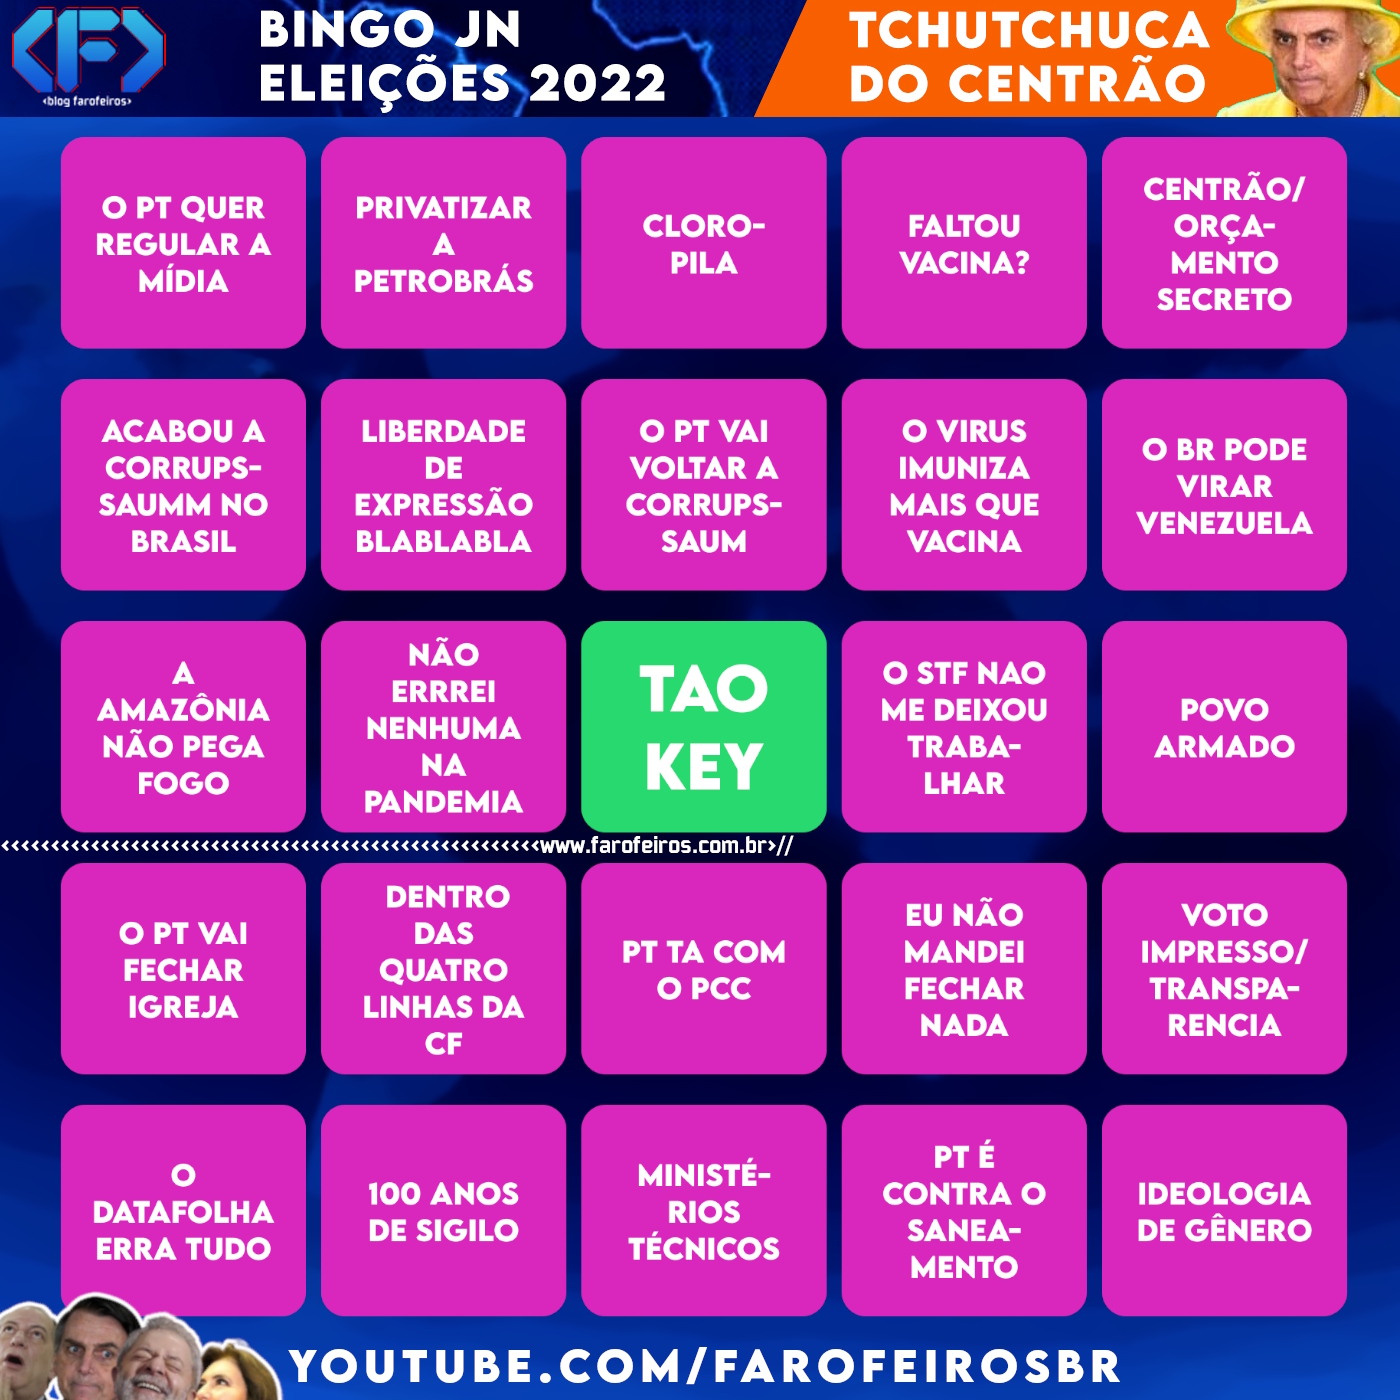 Cartela BINGO JN - Eleições 2022 - Jair Bolsonaro - Tchutchuca do Centrão - Blog Farofeiros